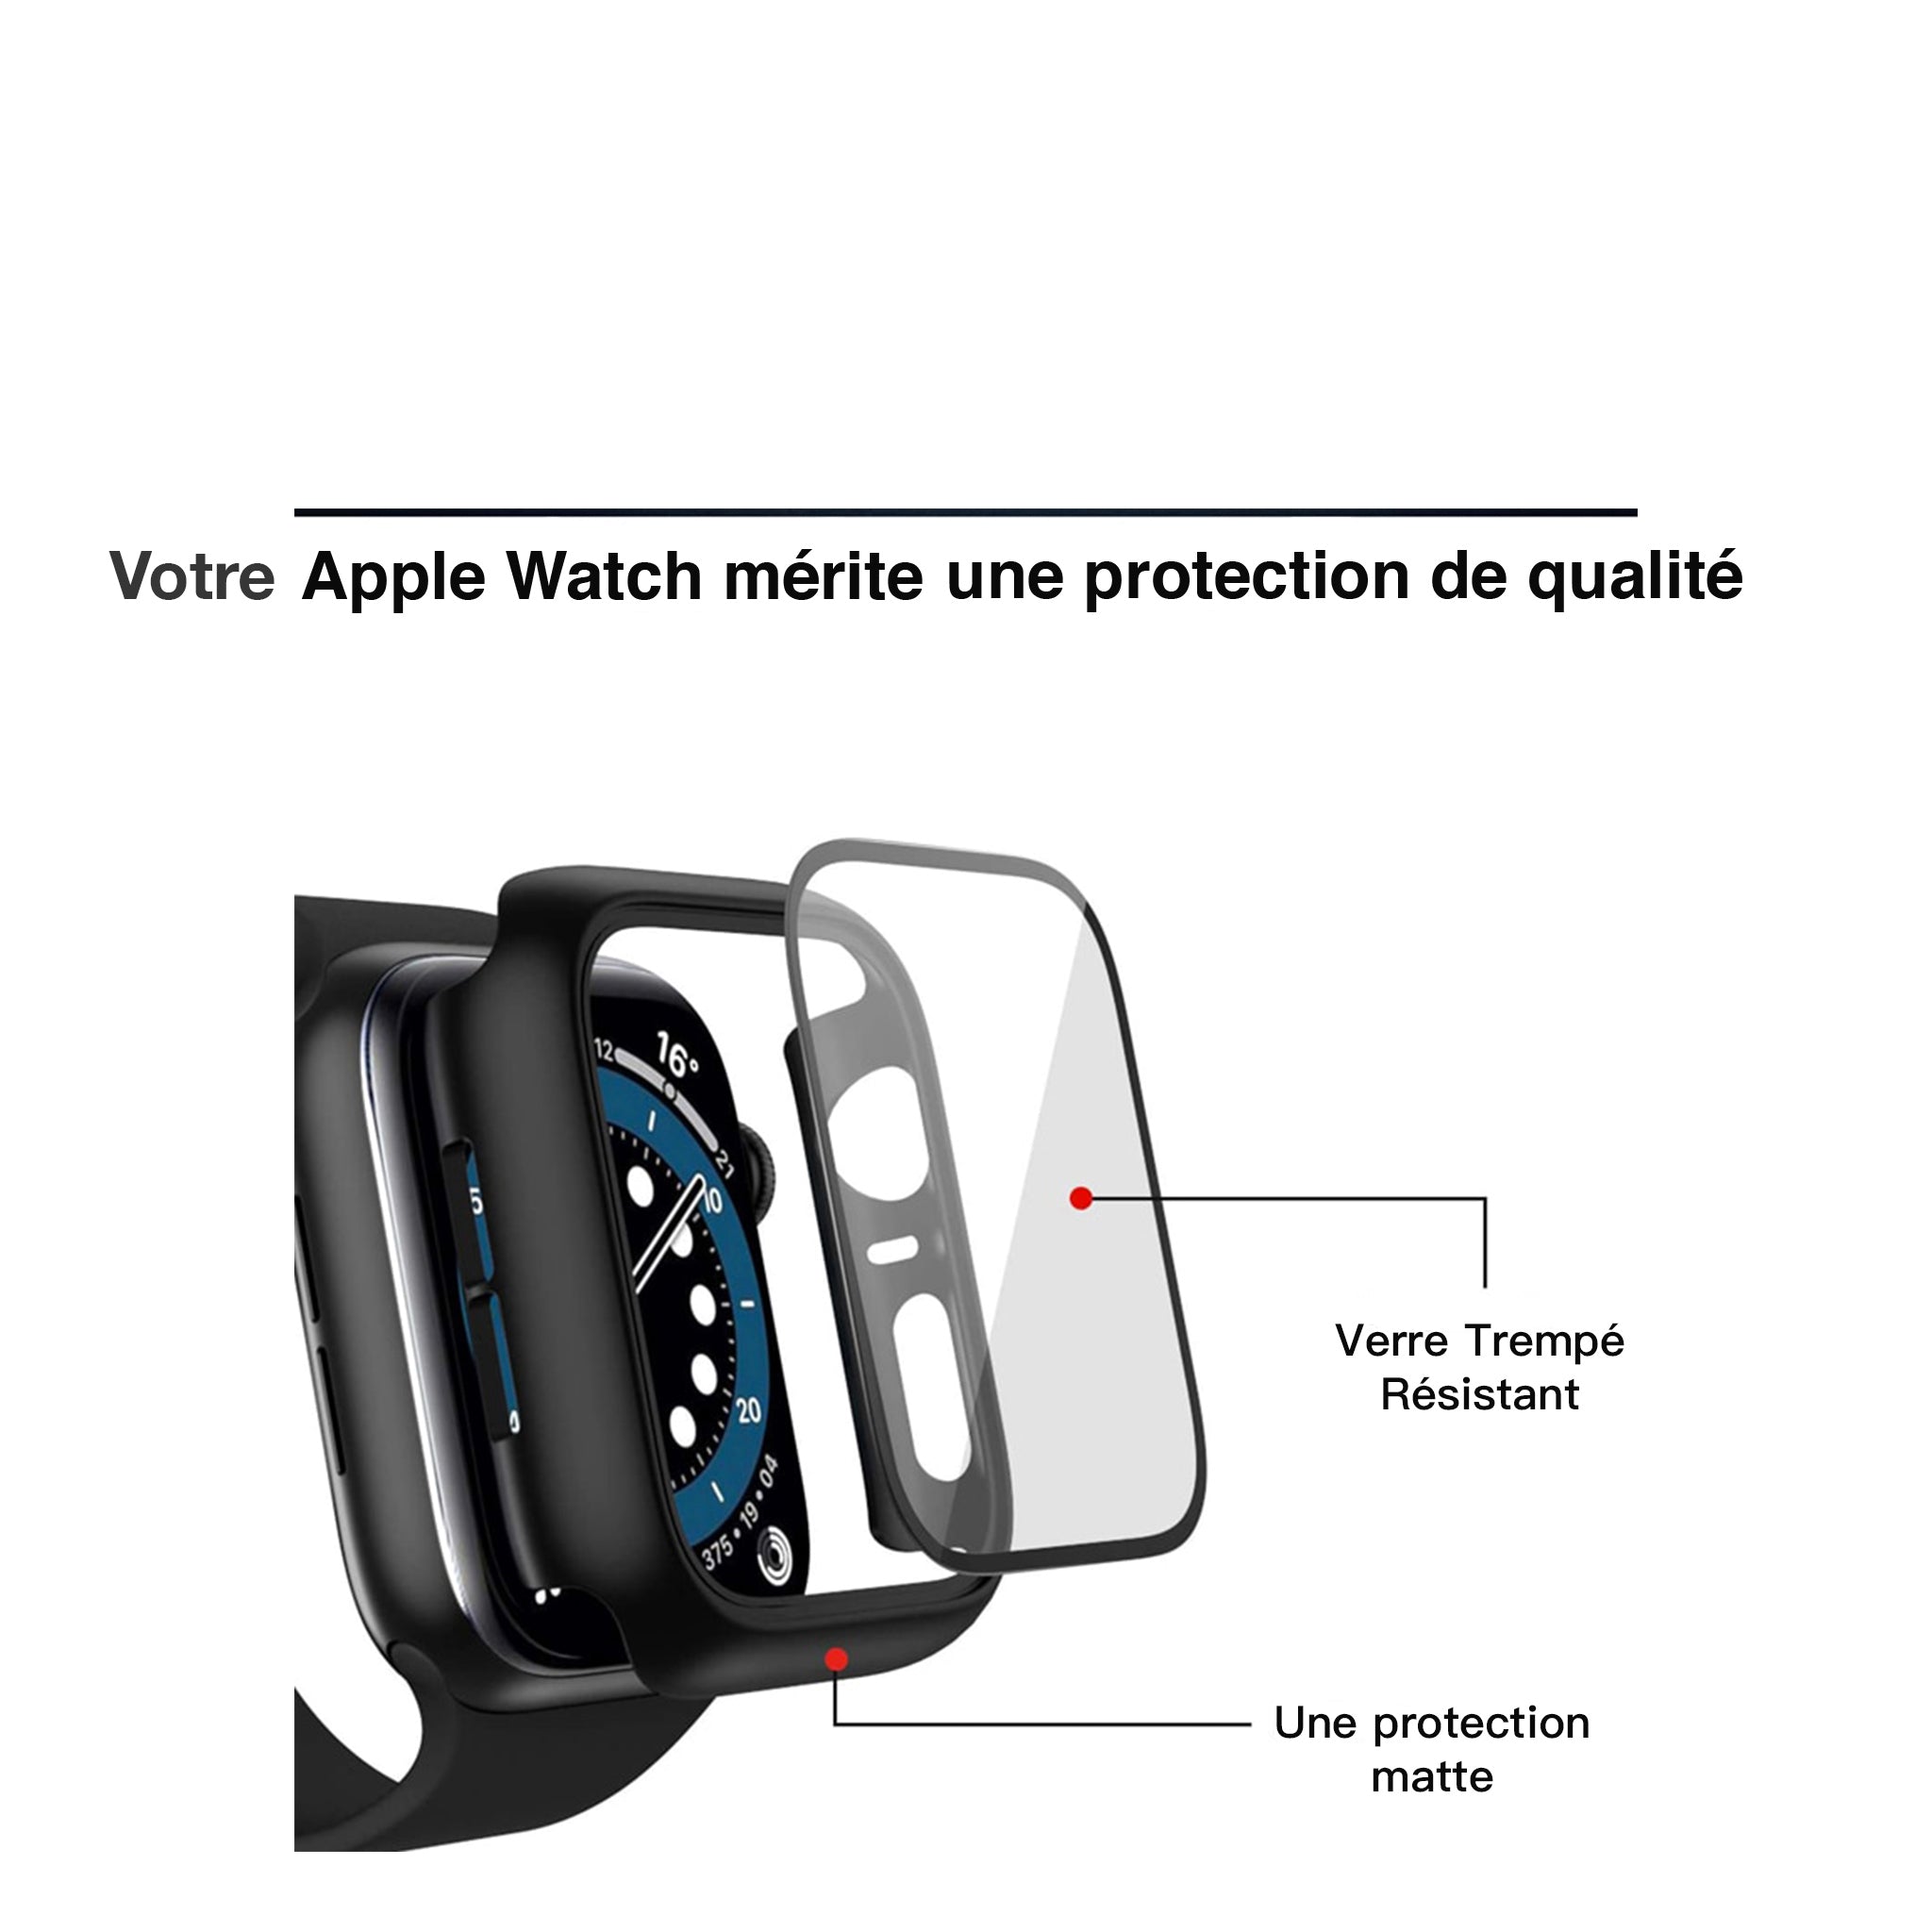 Les coques Apple Watch - Protection Haute Qualité